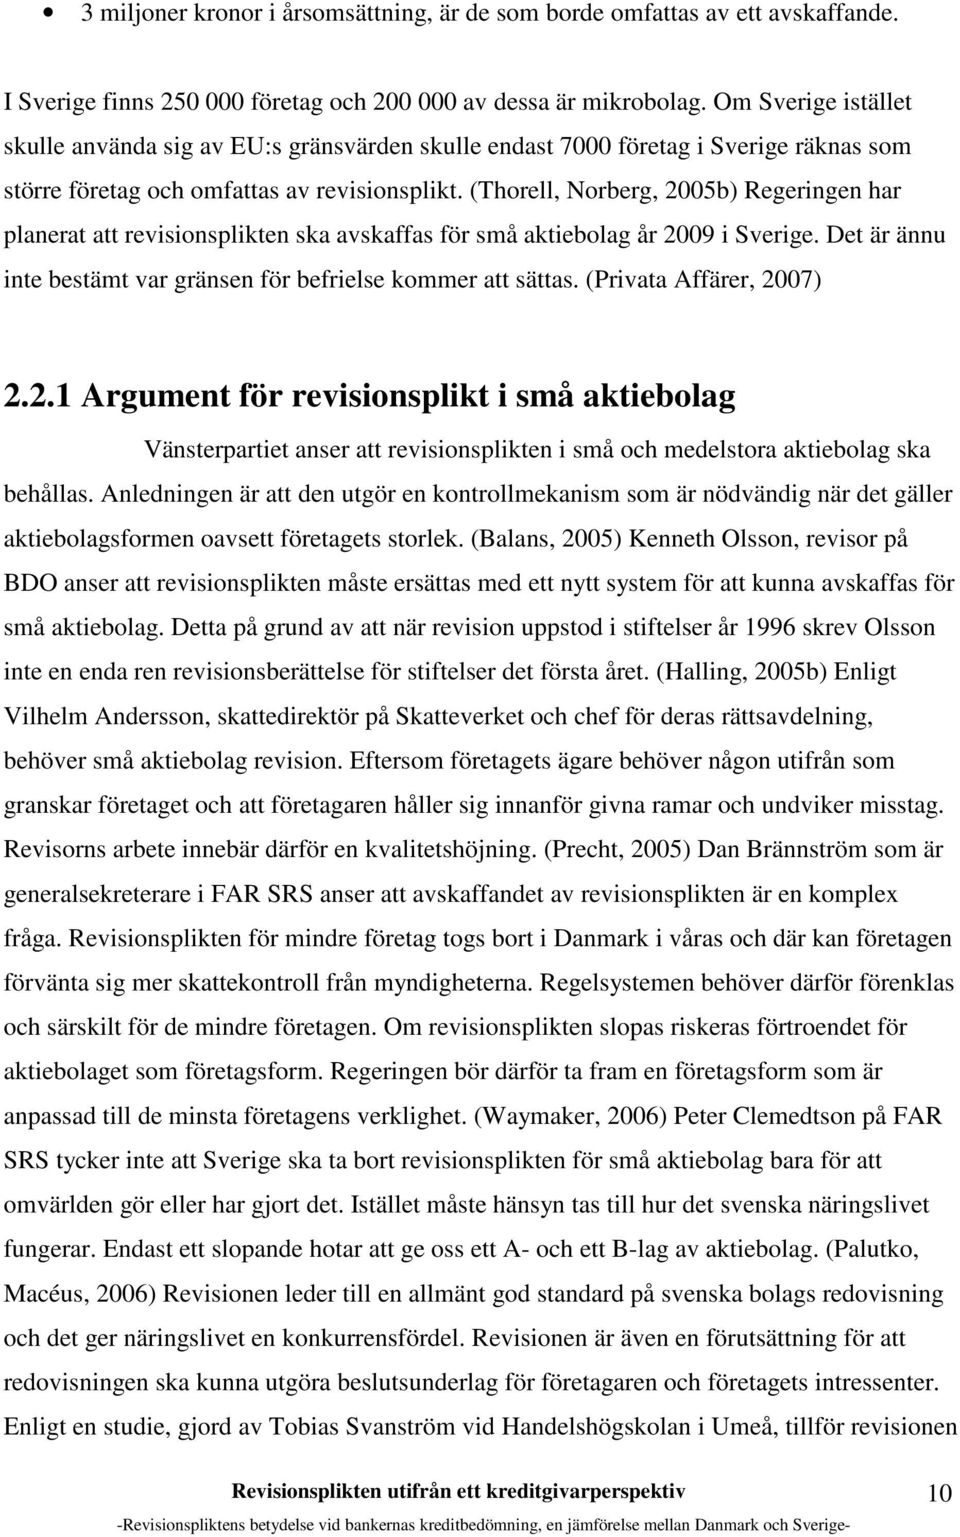 (Thorell, Norberg, 2005b) Regeringen har planerat att revisionsplikten ska avskaffas för små aktiebolag år 2009 i Sverige. Det är ännu inte bestämt var gränsen för befrielse kommer att sättas.